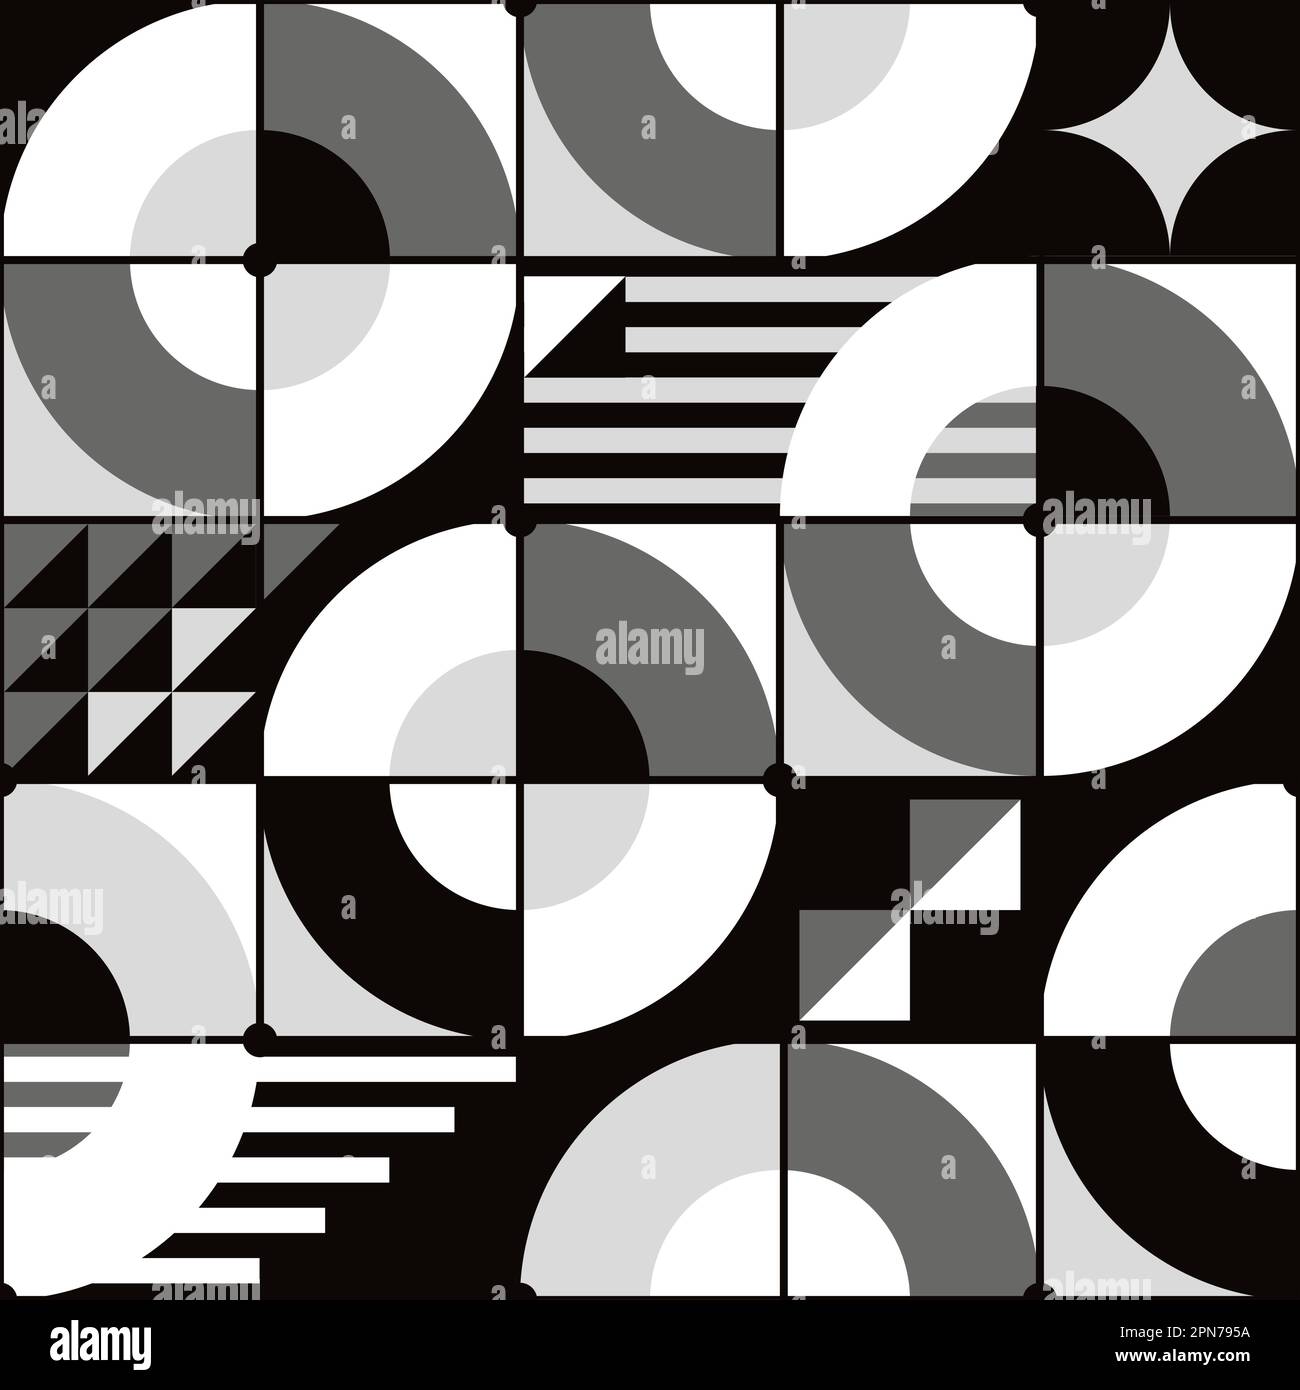 Motivo vettoriale ispirato a Bauhaus senza cuciture in nero, grigio e bianco - design geometrico retrò con cerchi, triangoli, linee e quadrati Illustrazione Vettoriale